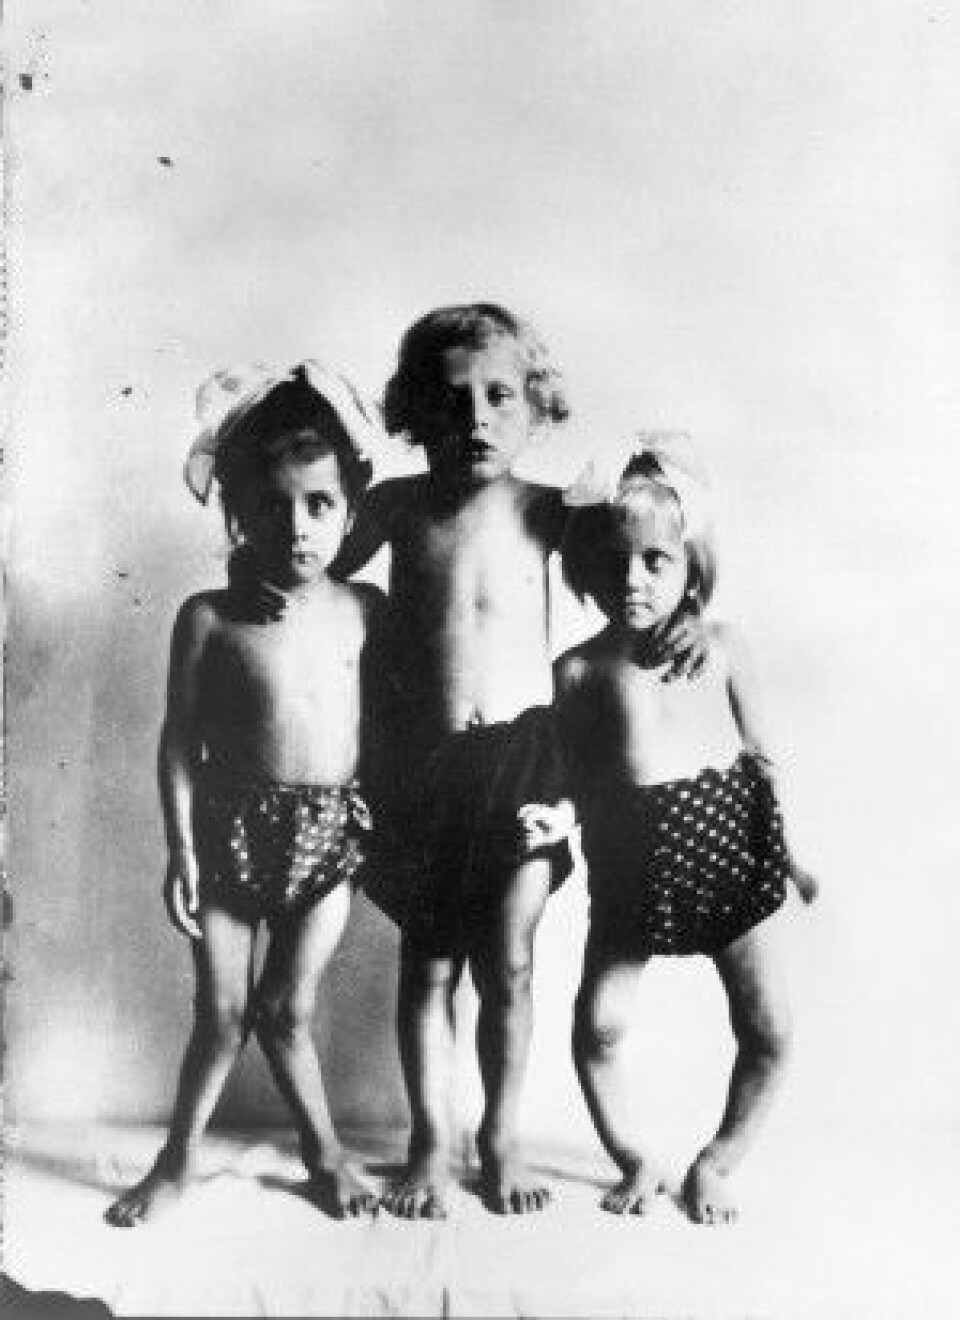 Dette bildet er tatt i Wien mellom år 1920 og 1930 og viser tre barn med ulike stadier av rakitt. (Foto: ukjent / Wellcome Library, London / CC BY SA 4.0)